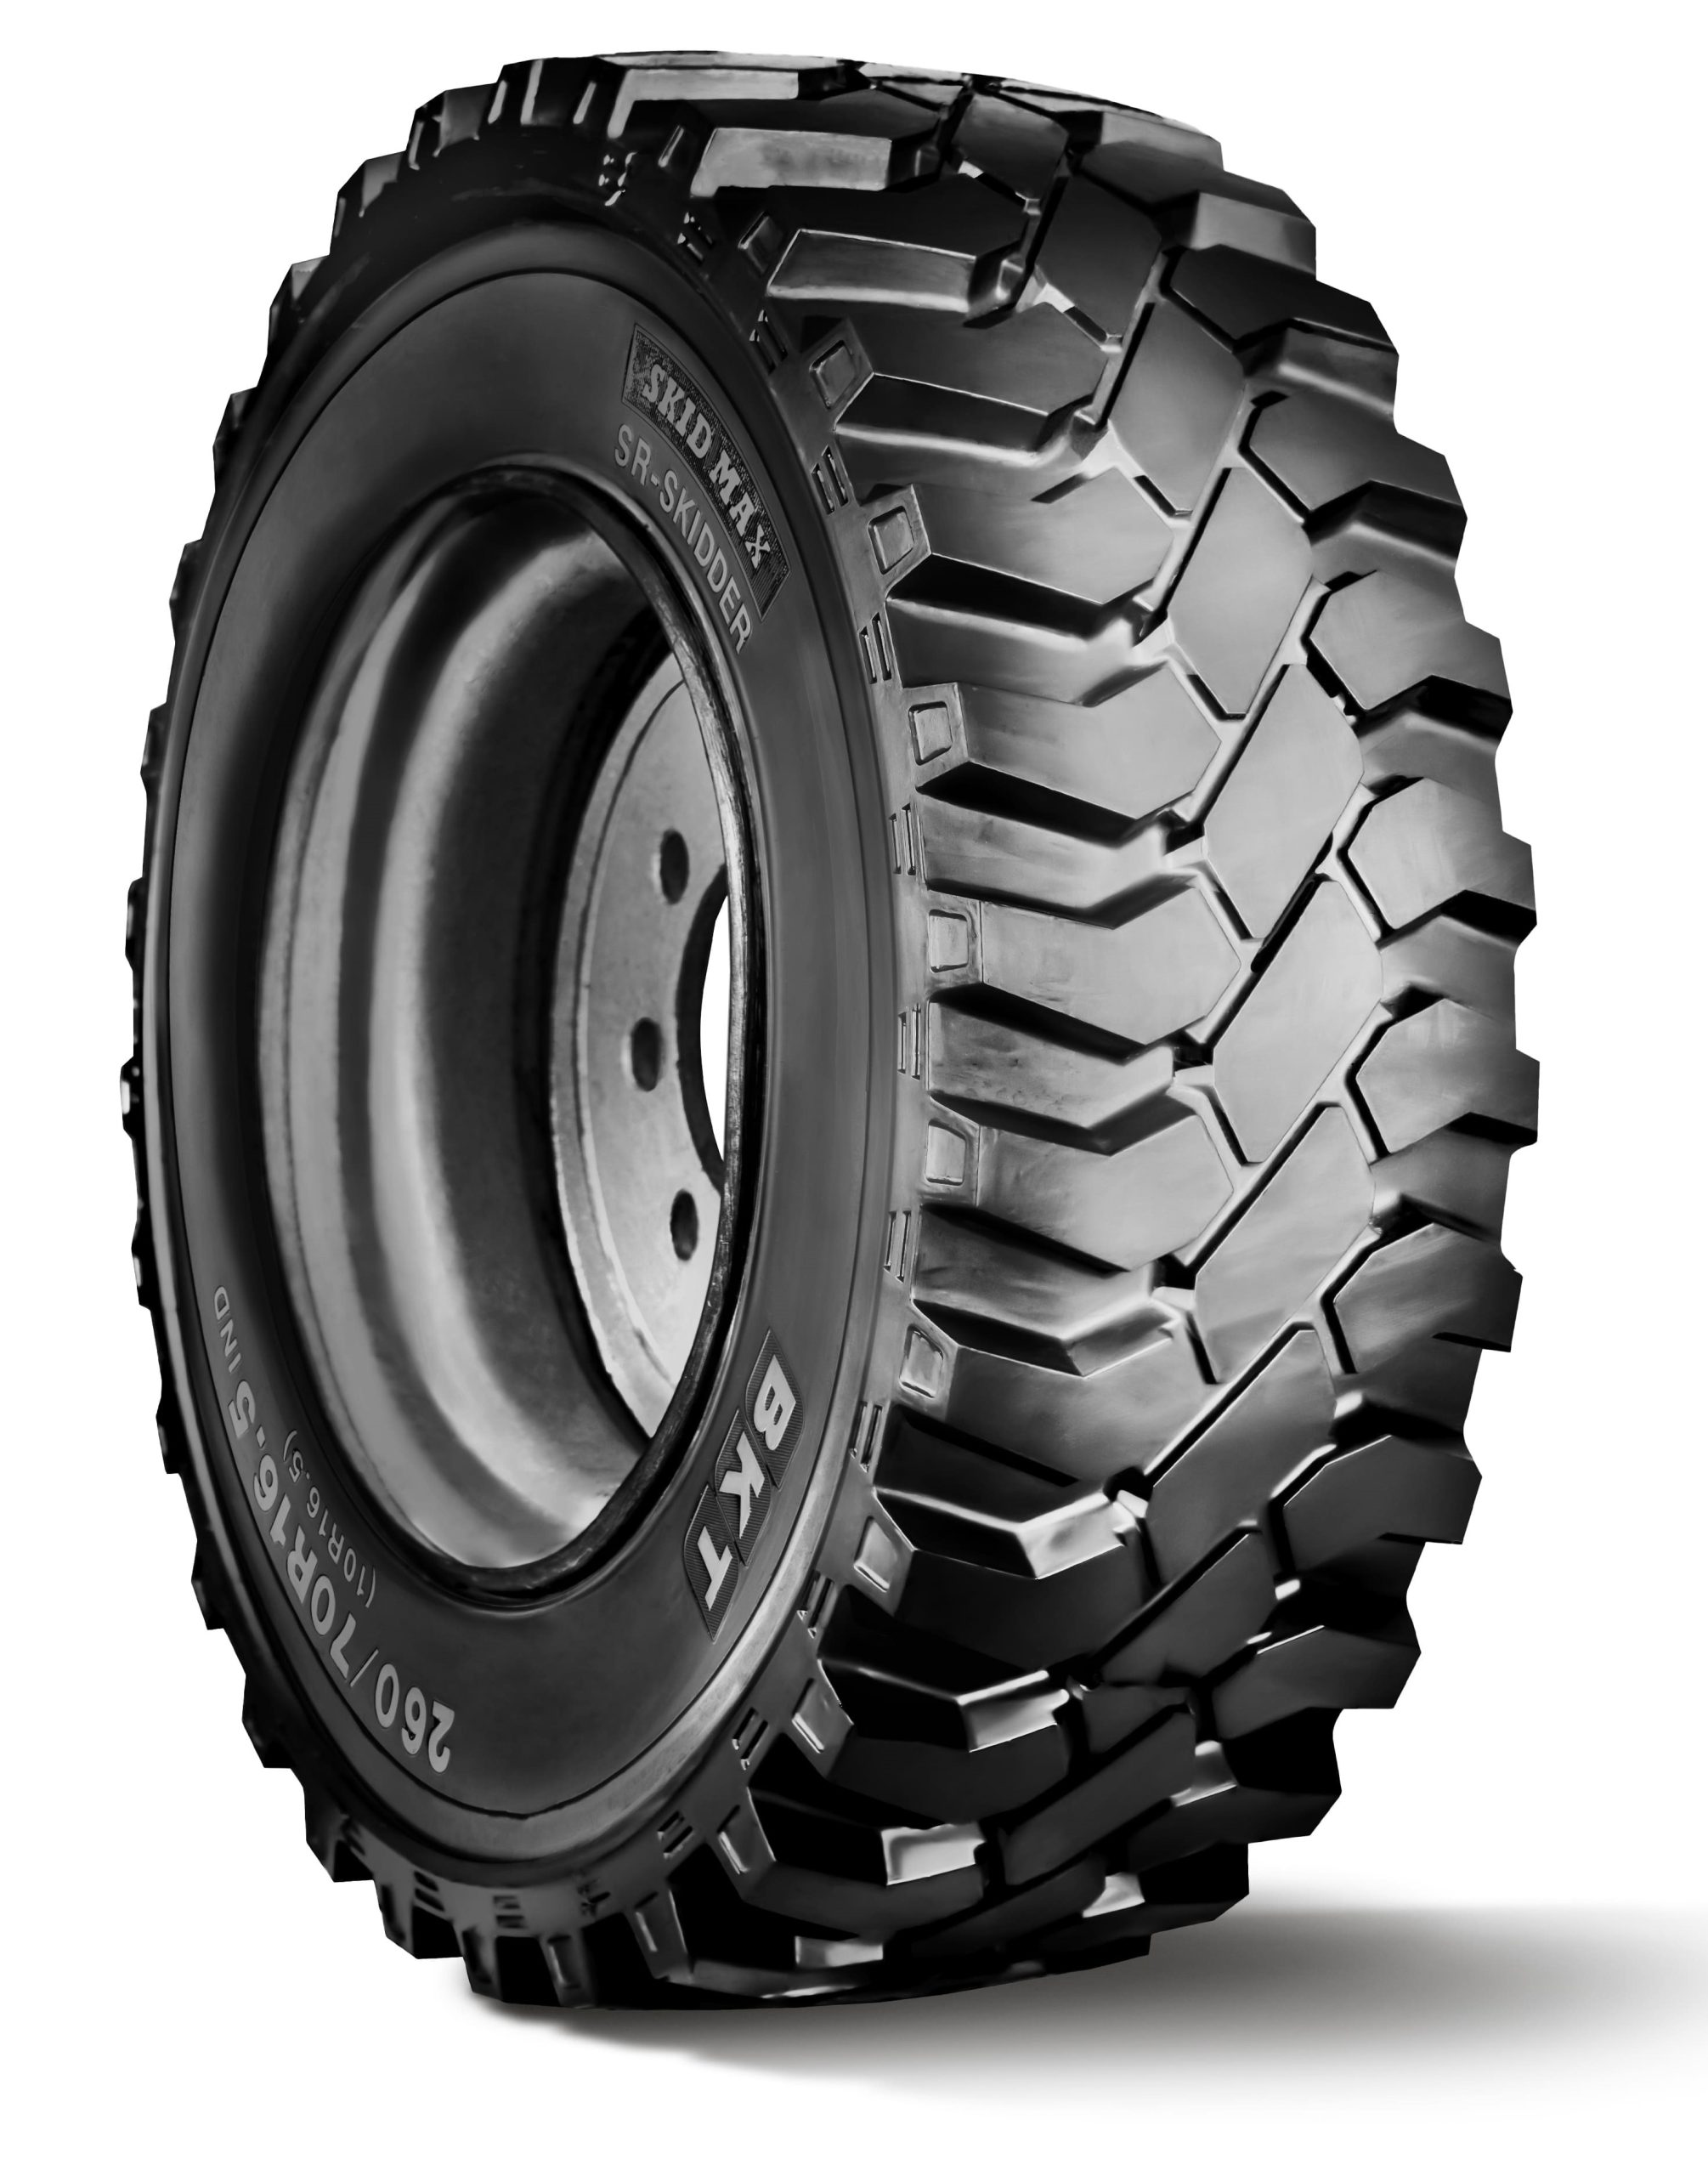 Gli pneumatici BKT SKID MAX SR-SKIDDER hanno una struttura All Steel con cinture in acciaio